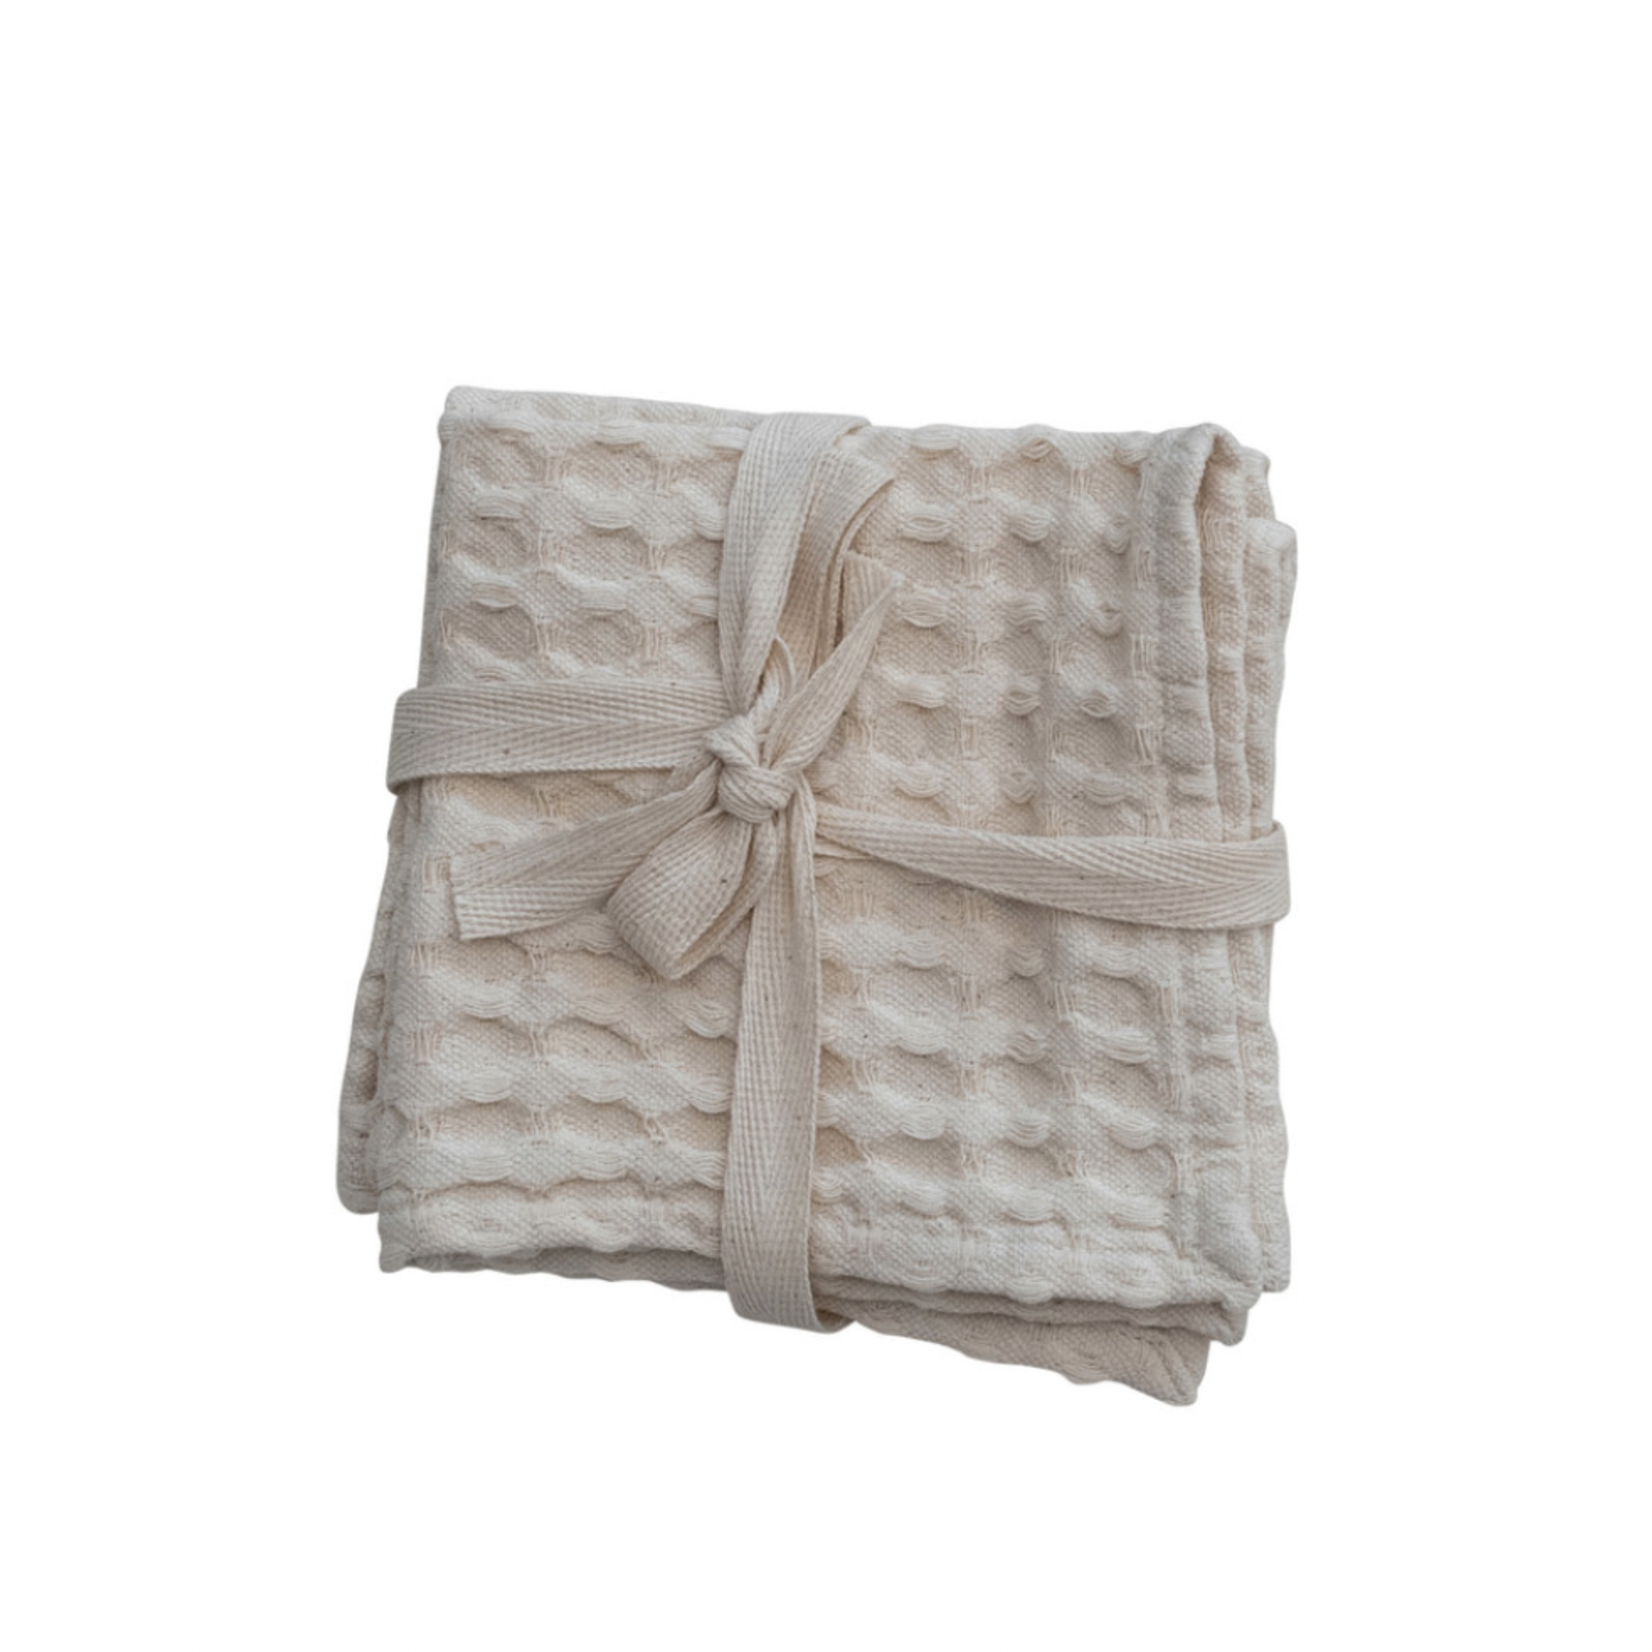 https://cdn.shoplightspeed.com/shops/638442/files/54846561/1652x1652x1/natural-cotton-waffle-weave-dish-cloths-set-of-3.jpg